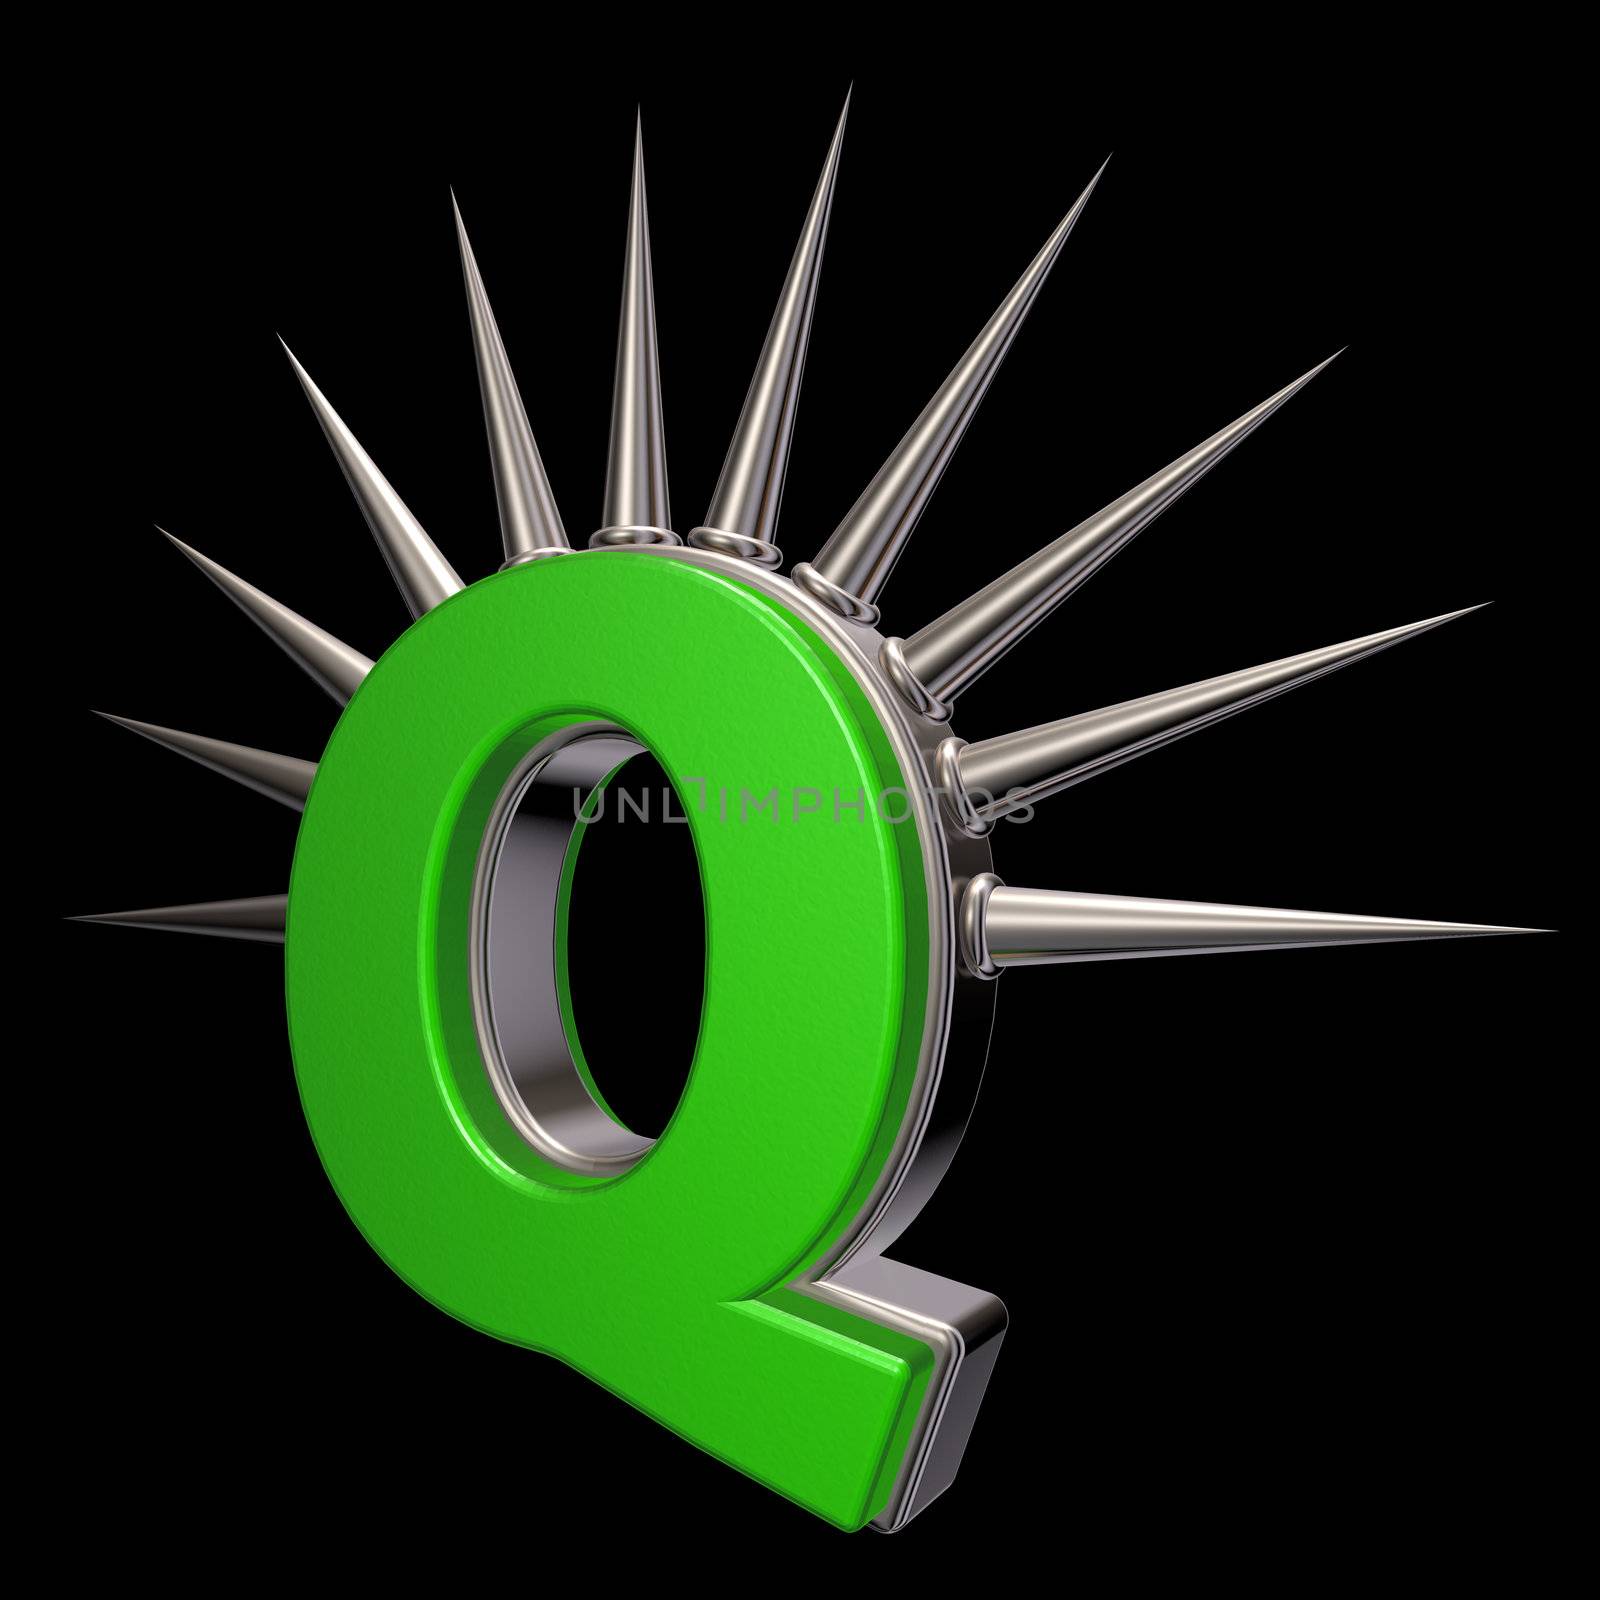 letter q with metal prickles on black background - 3d illustration